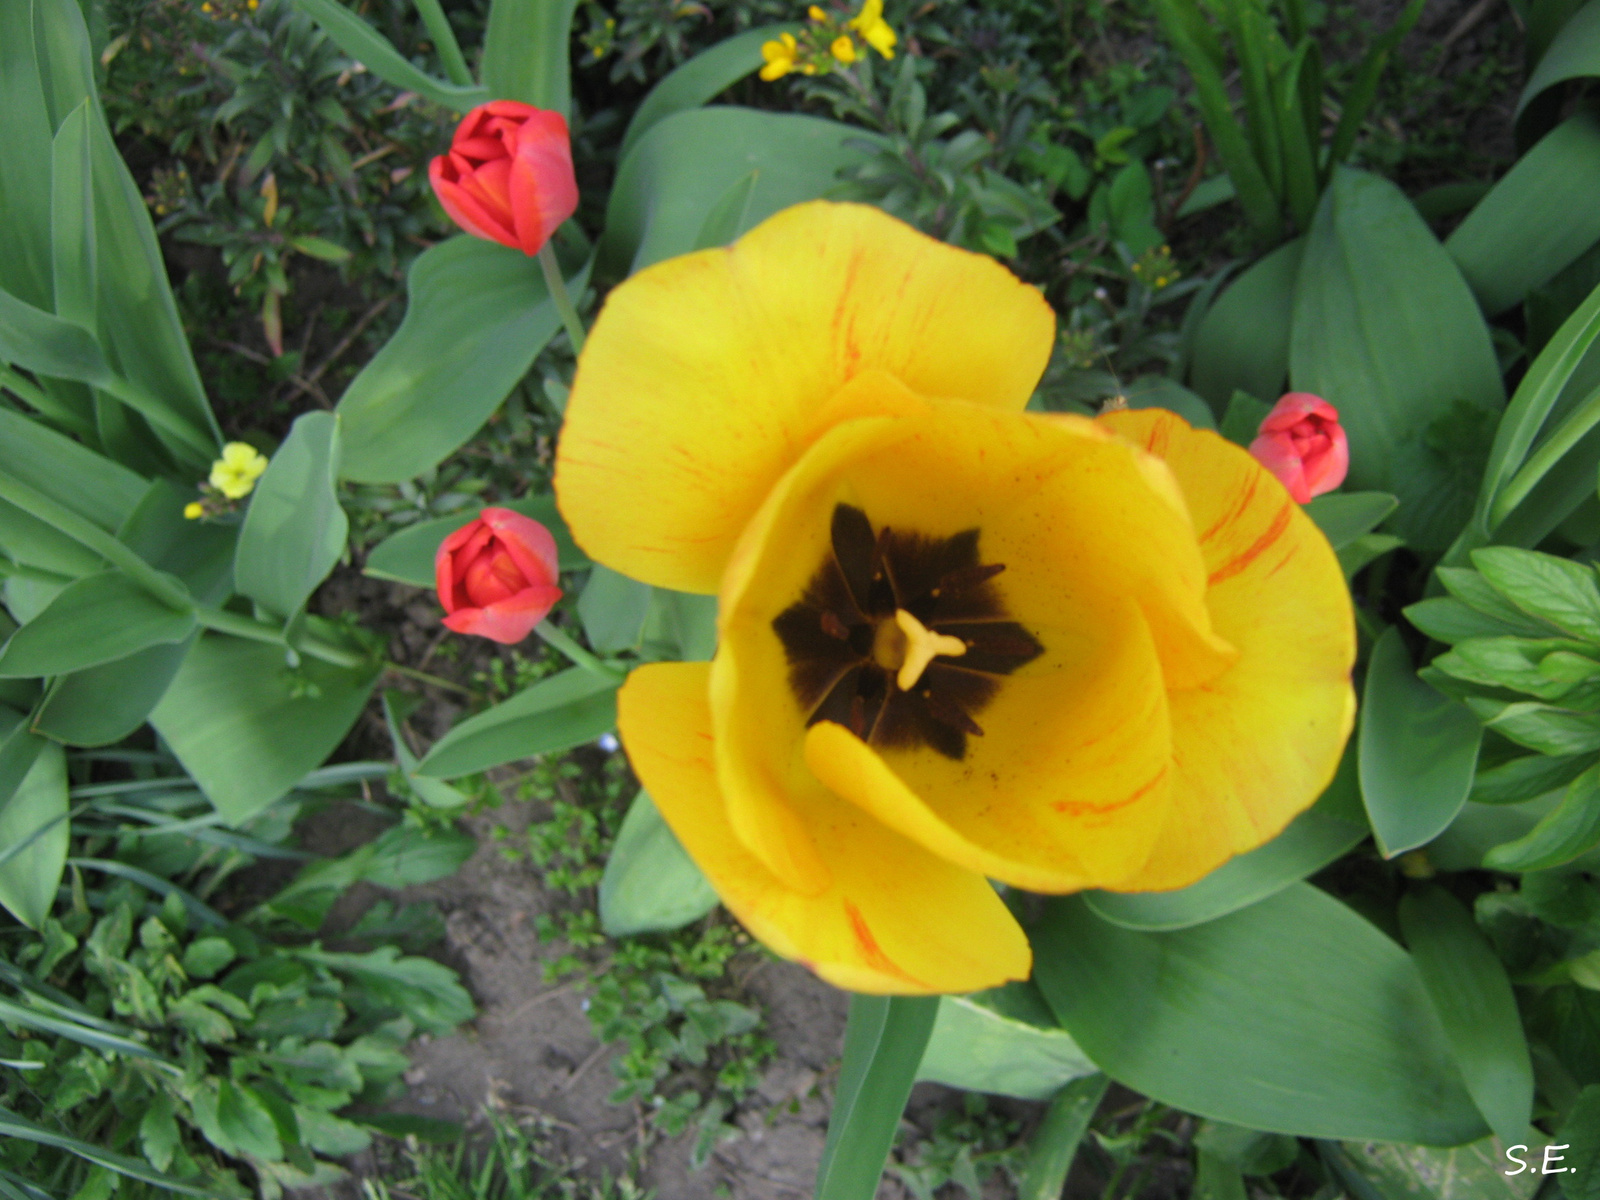 Sárga tulipán a pirosak között.